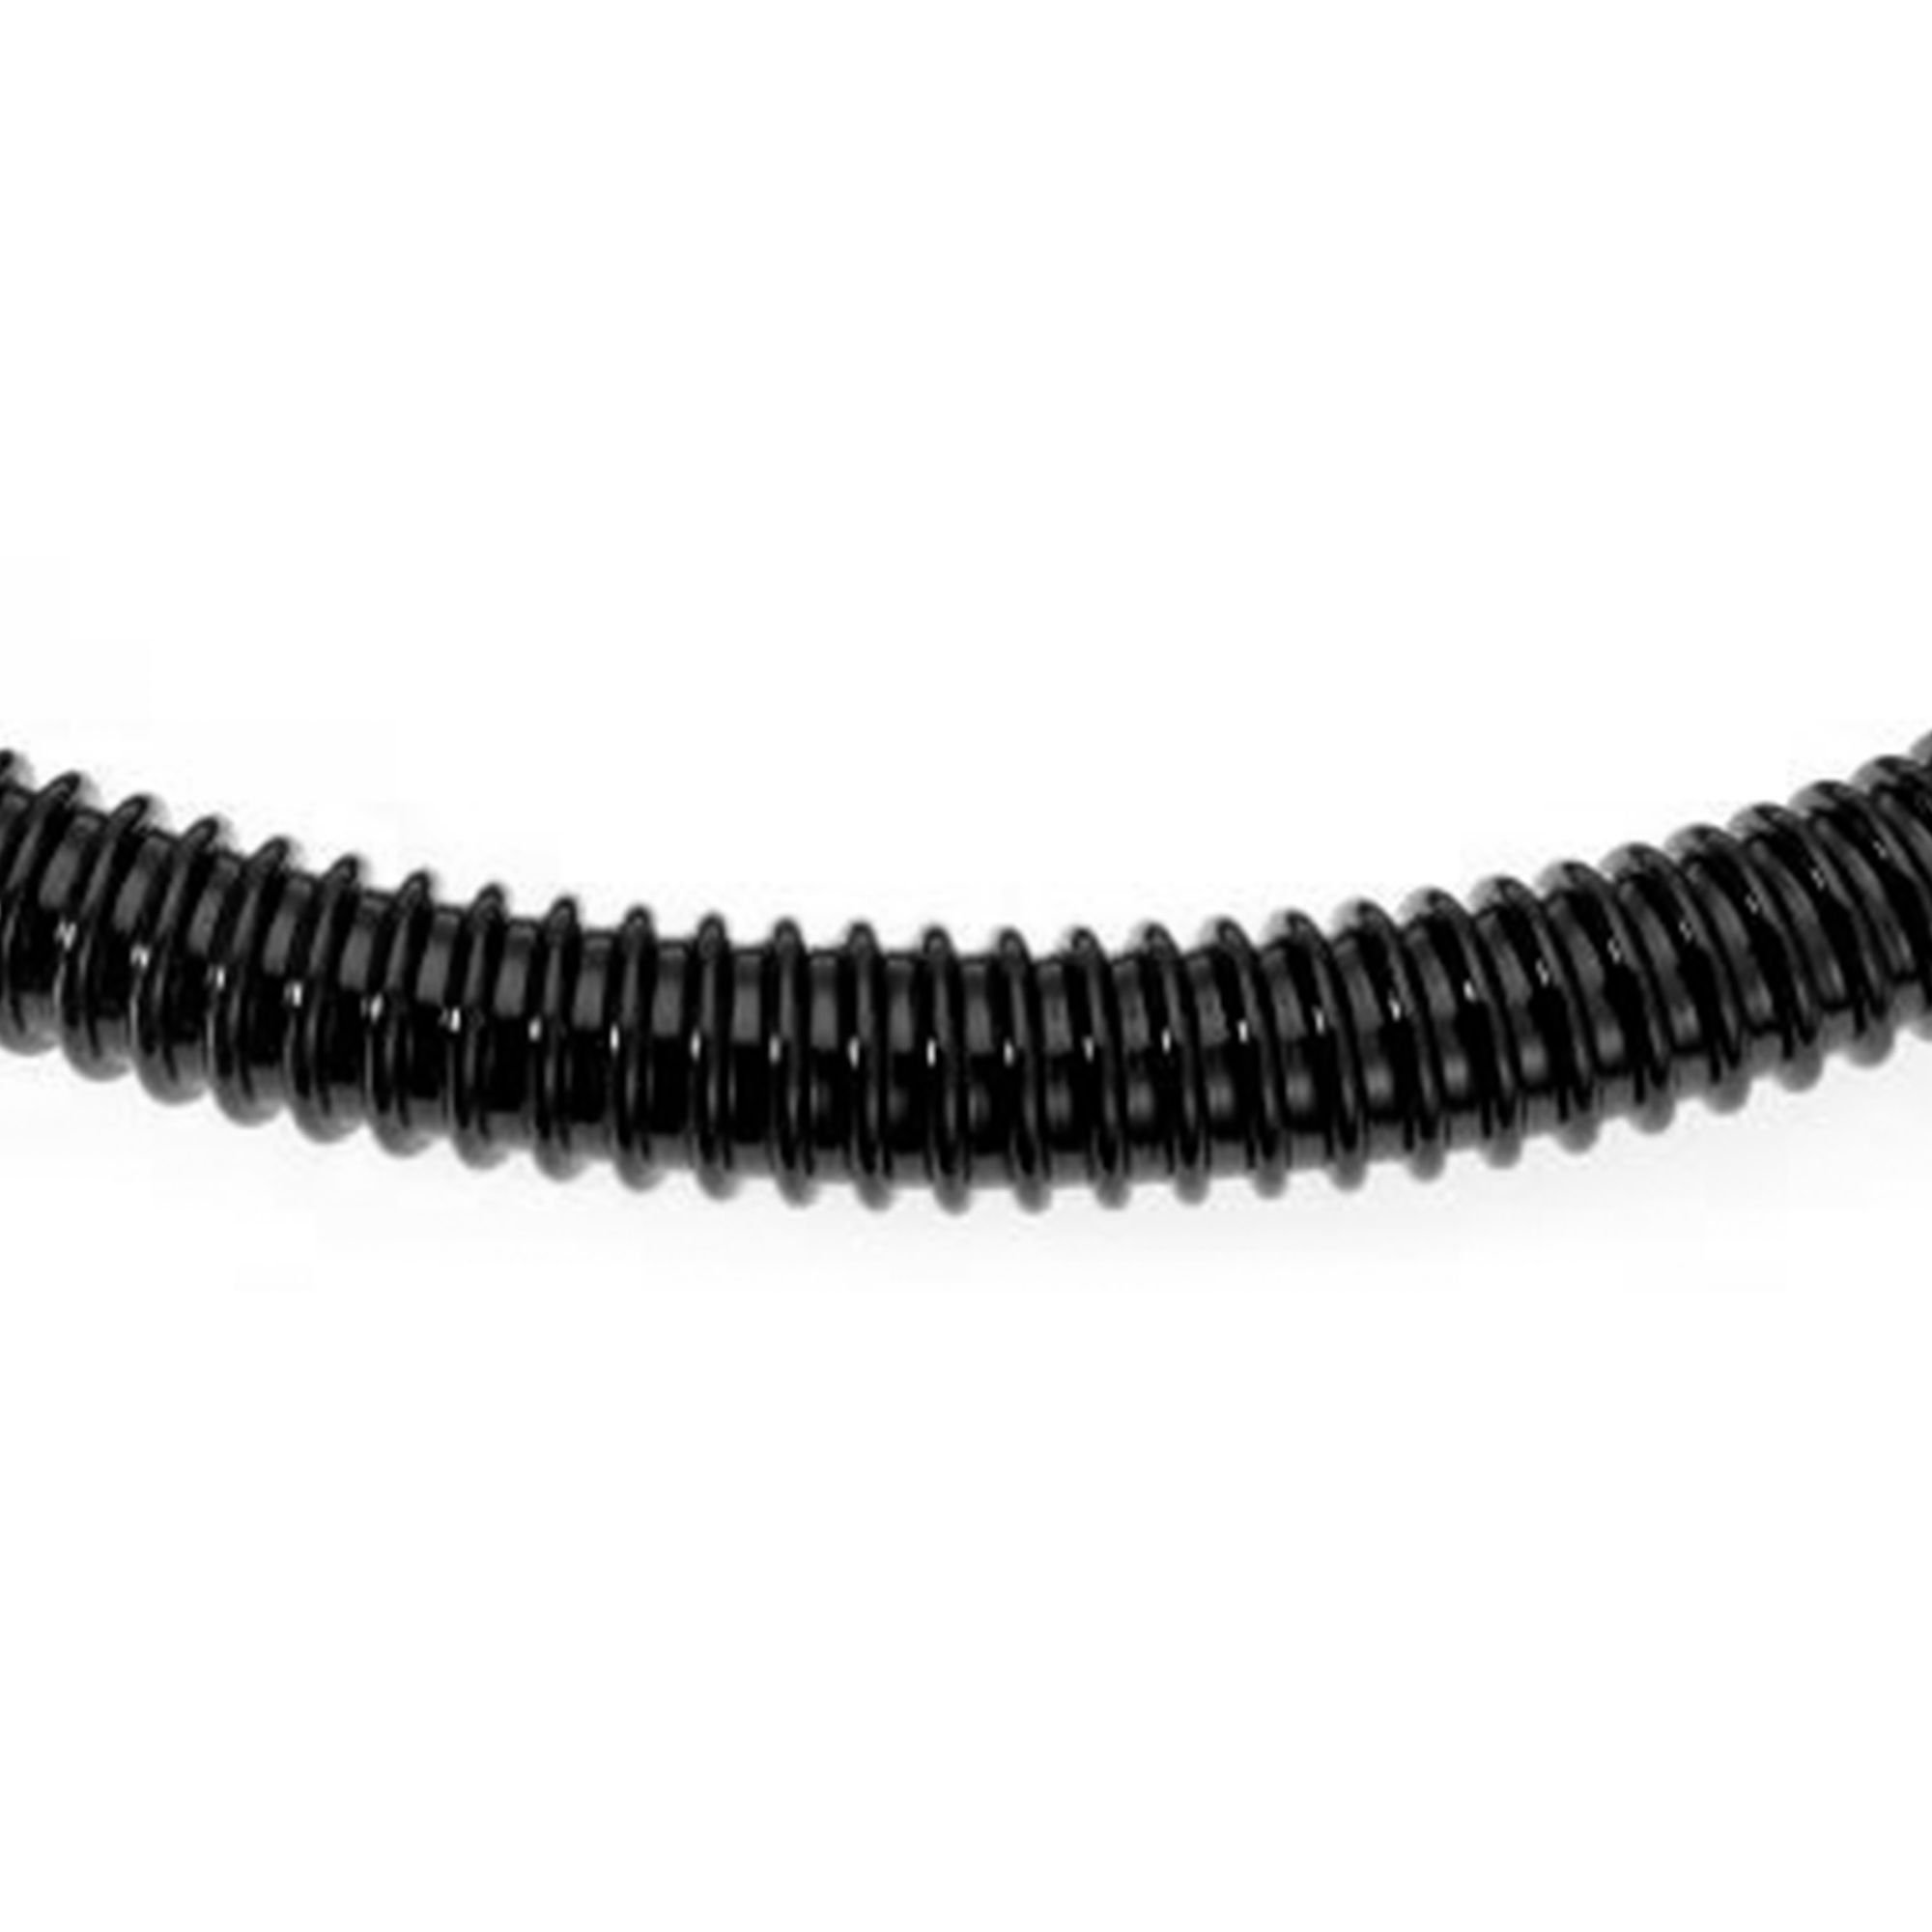 Buy Eliza Tinsley 19mm Black Ribbed Hose (Reel of 25m) online at